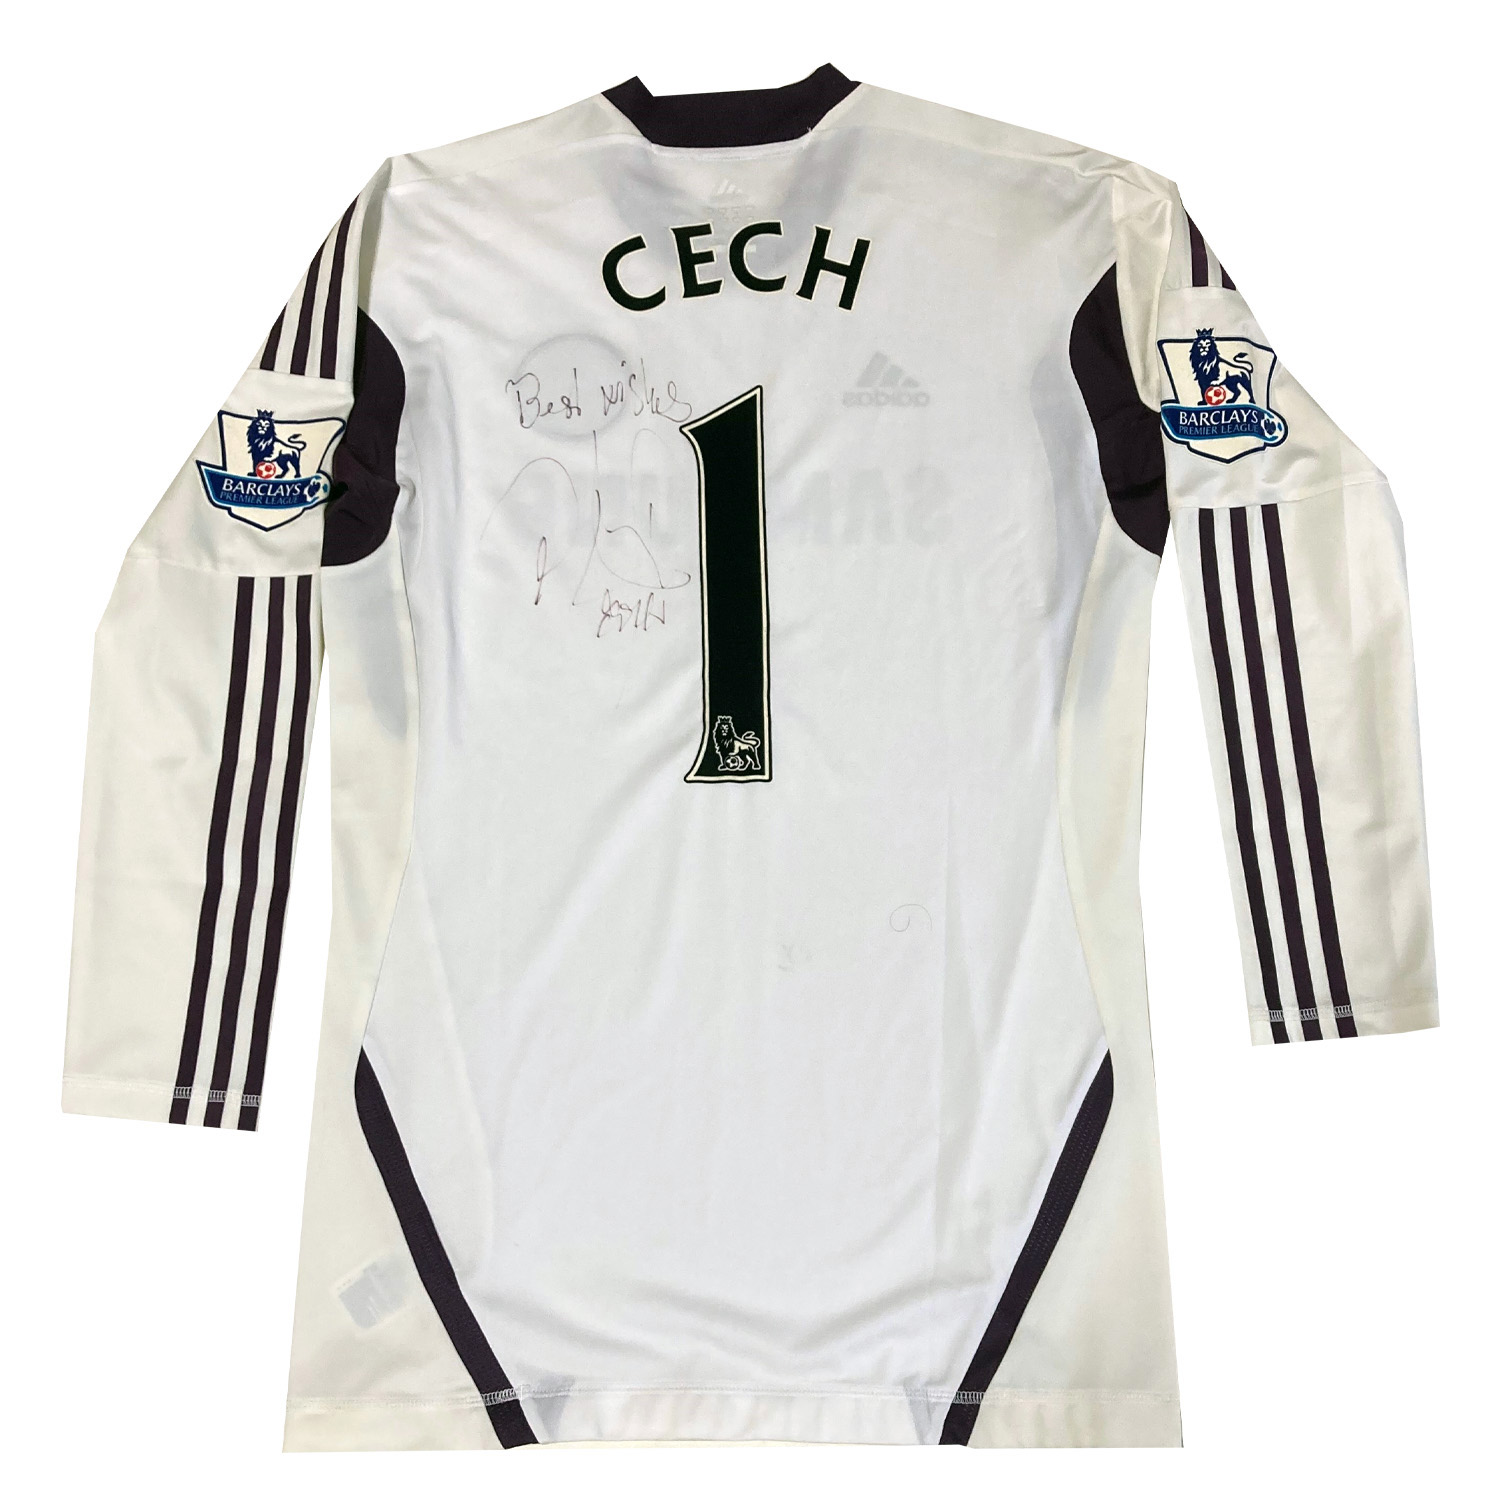 ツェフ直筆サイン入り選手支給チェルシー2011-2012GKユニフォーム / Petr Chech signed Chelsea 2011-2012  player issued goalkeeper shirt